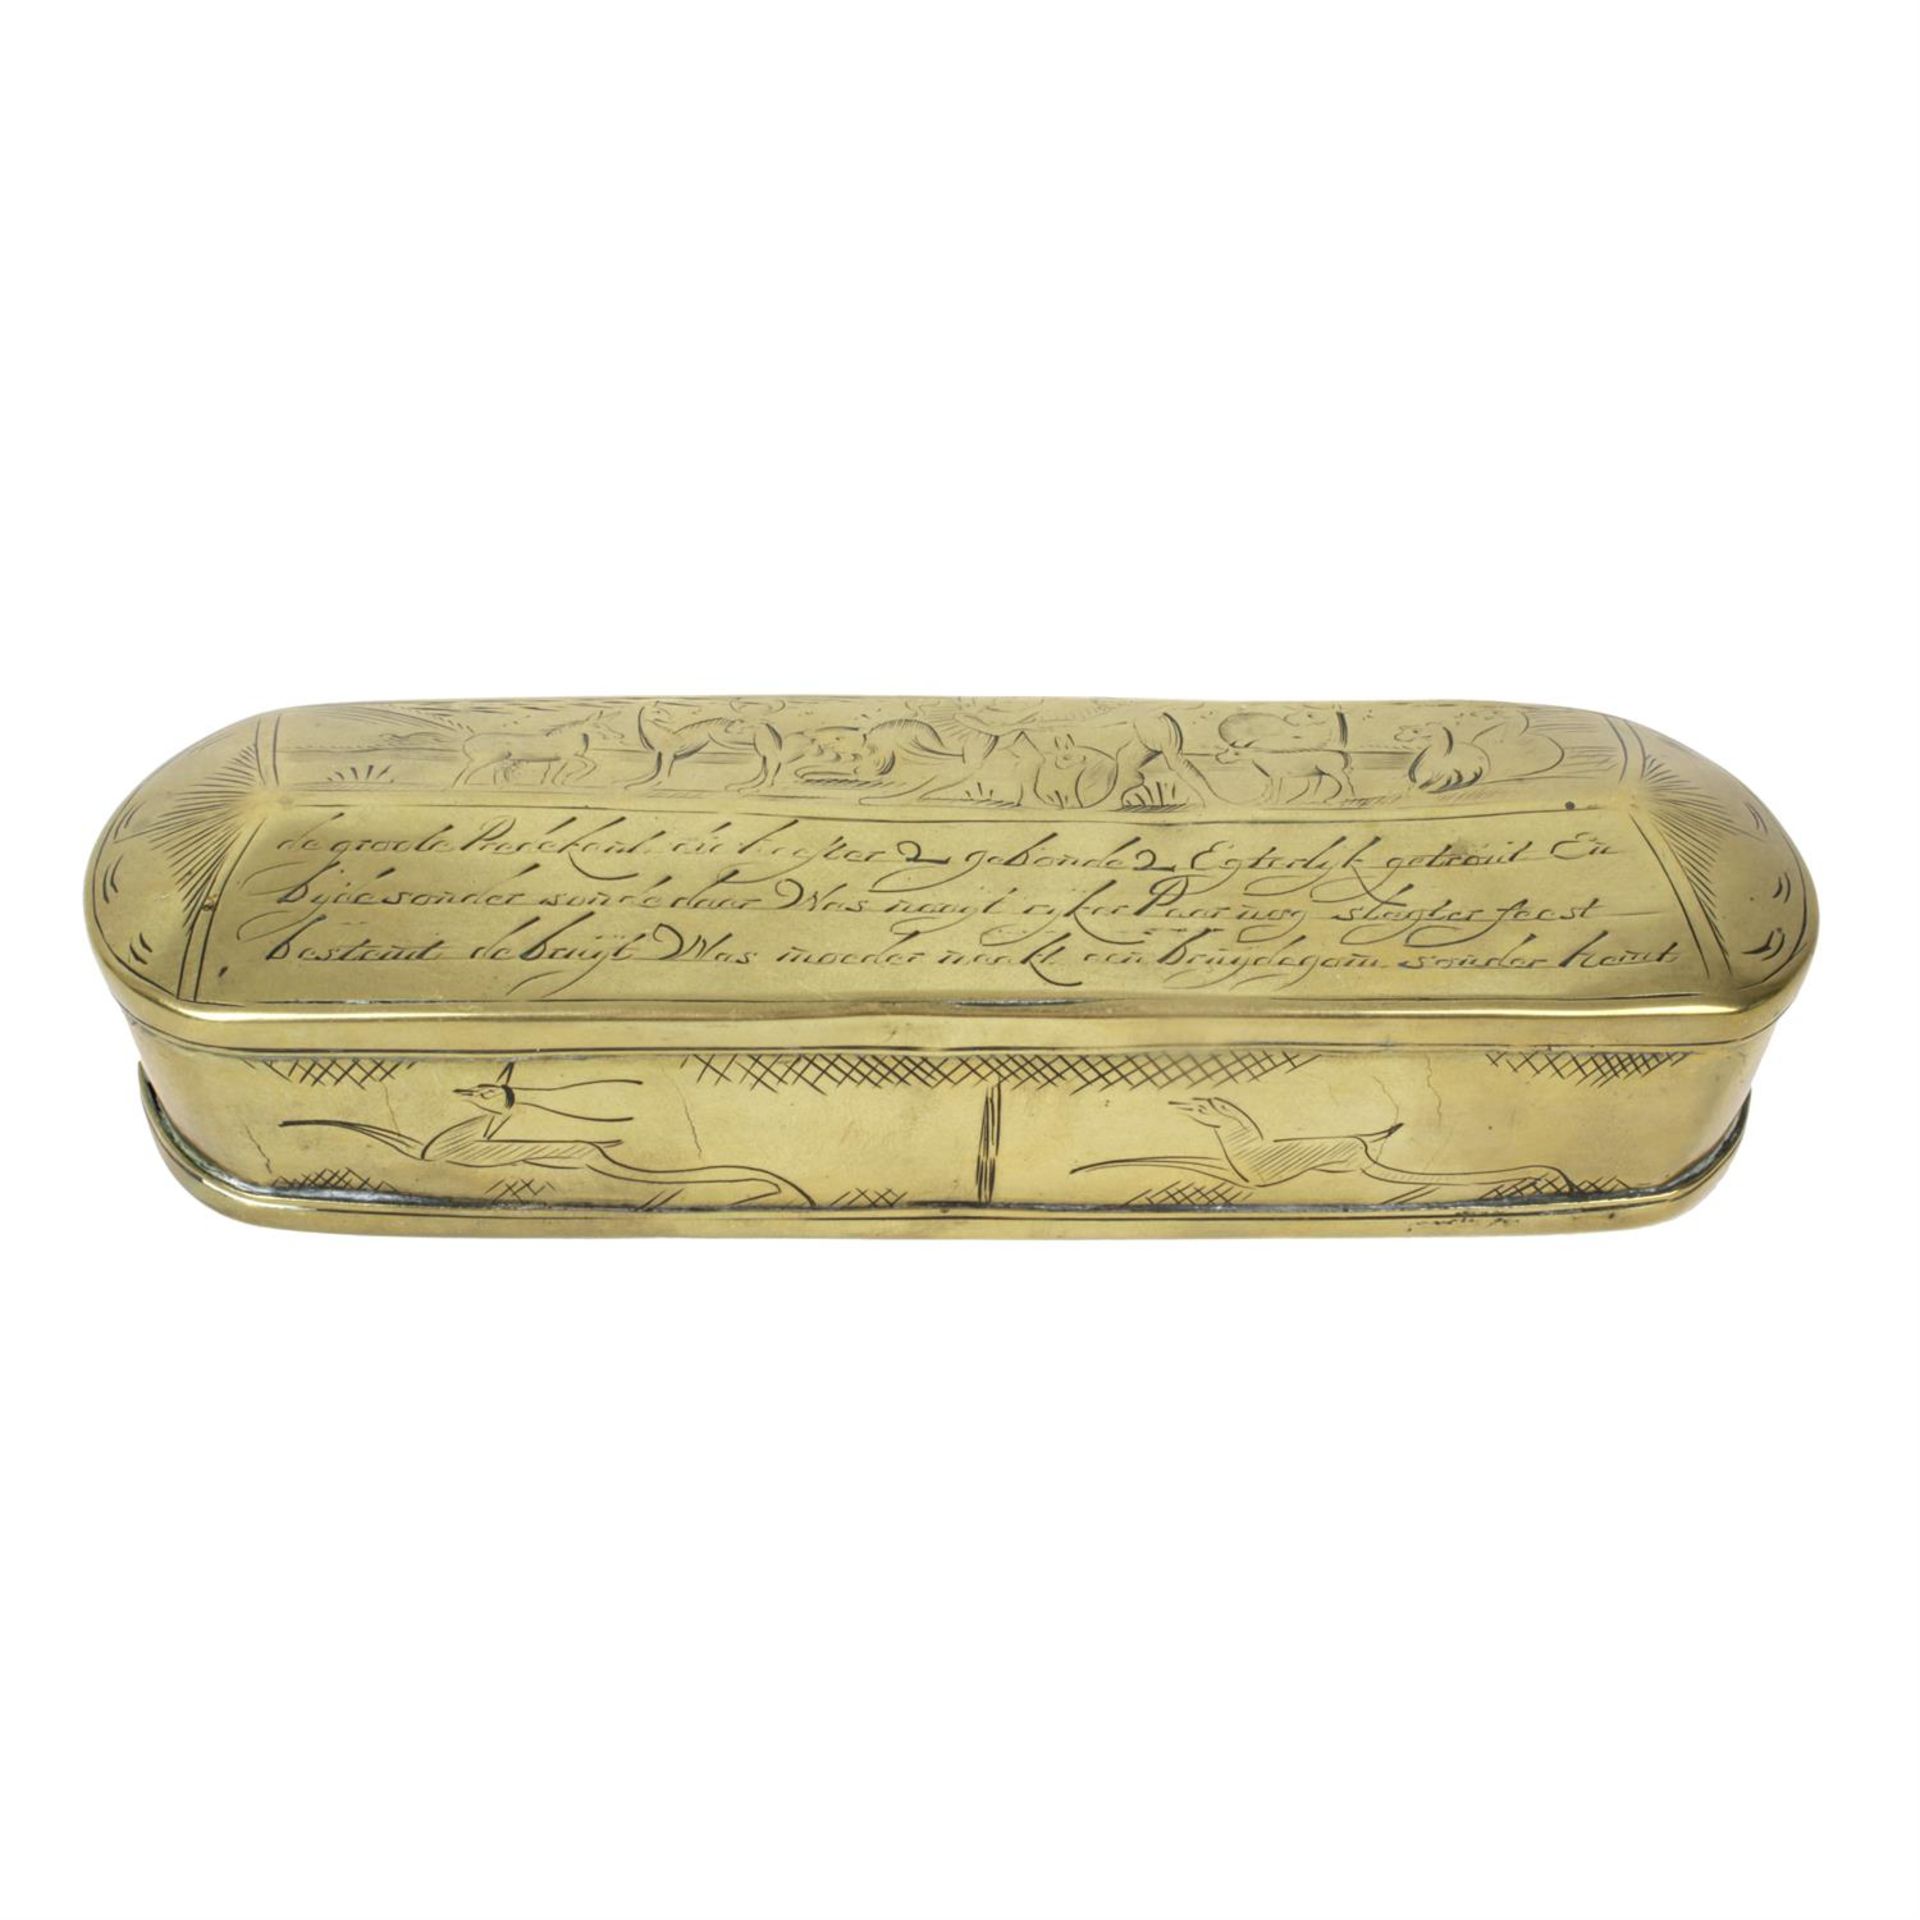 A Dutch brass snuff box